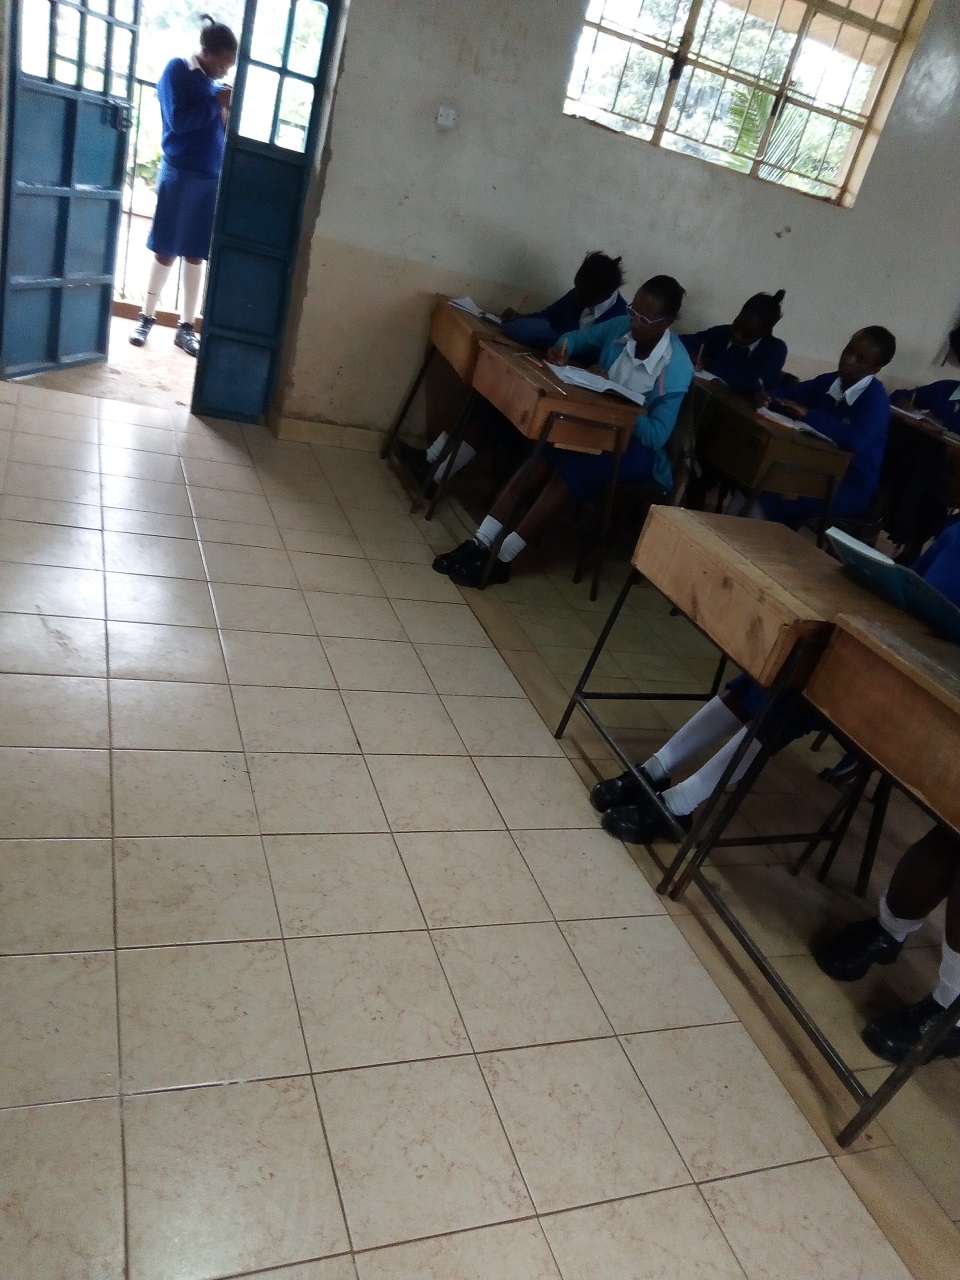 Die meisten Klassenräume haben mittlerweile einen neuen Fussboden erhalten / In most classrooms the floor has been renovated